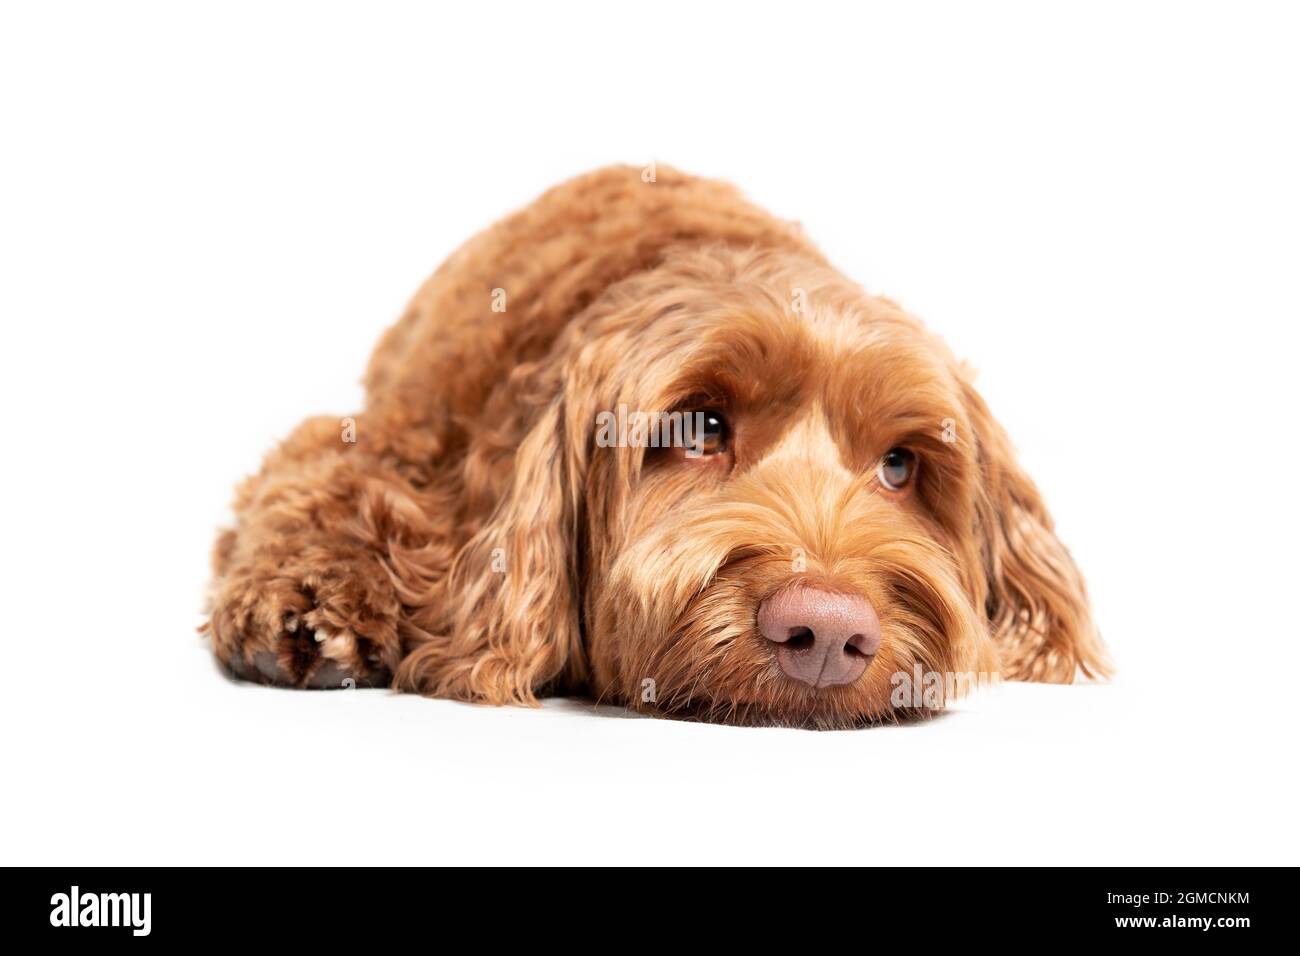 Labraddoodle chien couché sur le sol avec une expression triste ou endormi. Adorable chien doux au nez rose et aux sourcils adorables, qui regarde vers le haut. Sélectif Banque D'Images